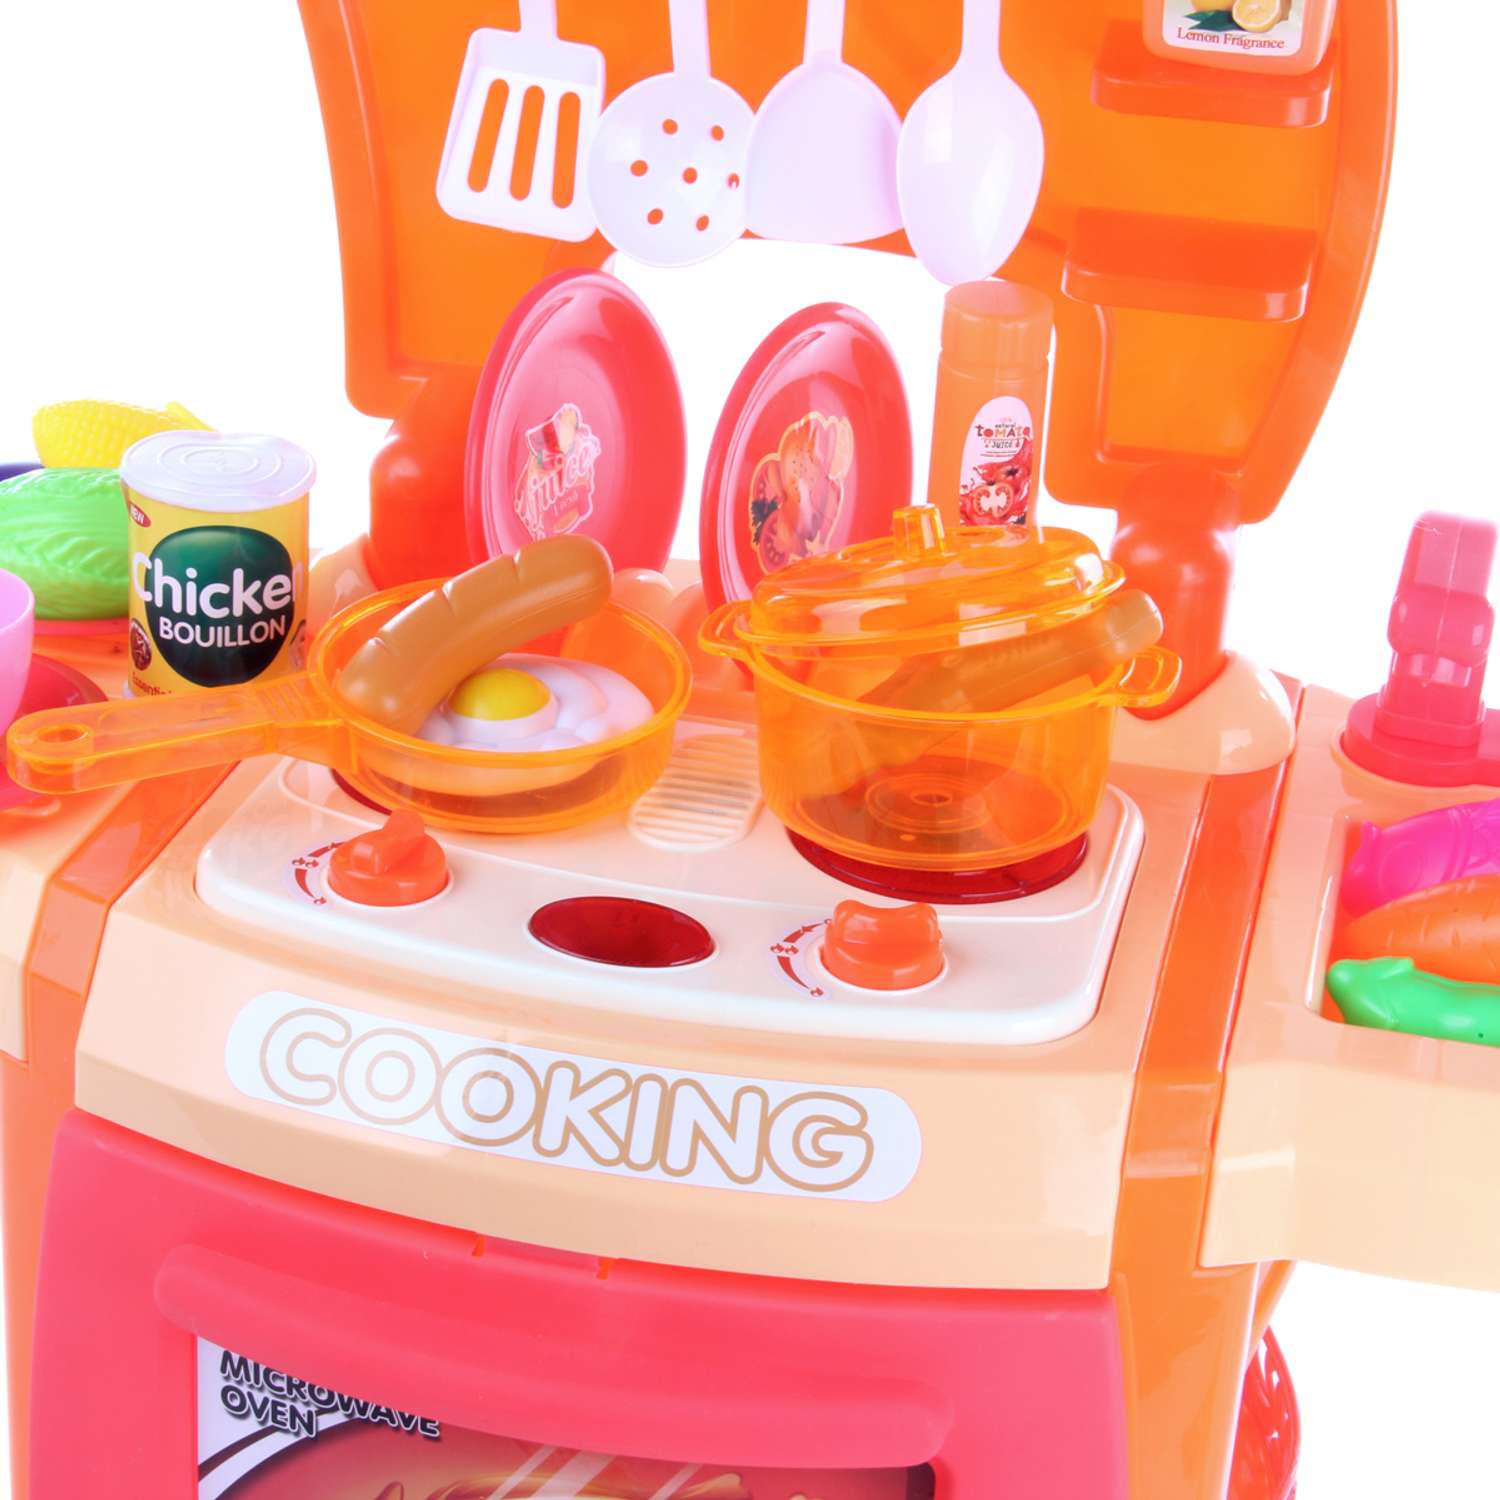 Детская кухня Veld Co Звуки свет вода пар плита детская посуда игрушечная 28 предметов - фото 3